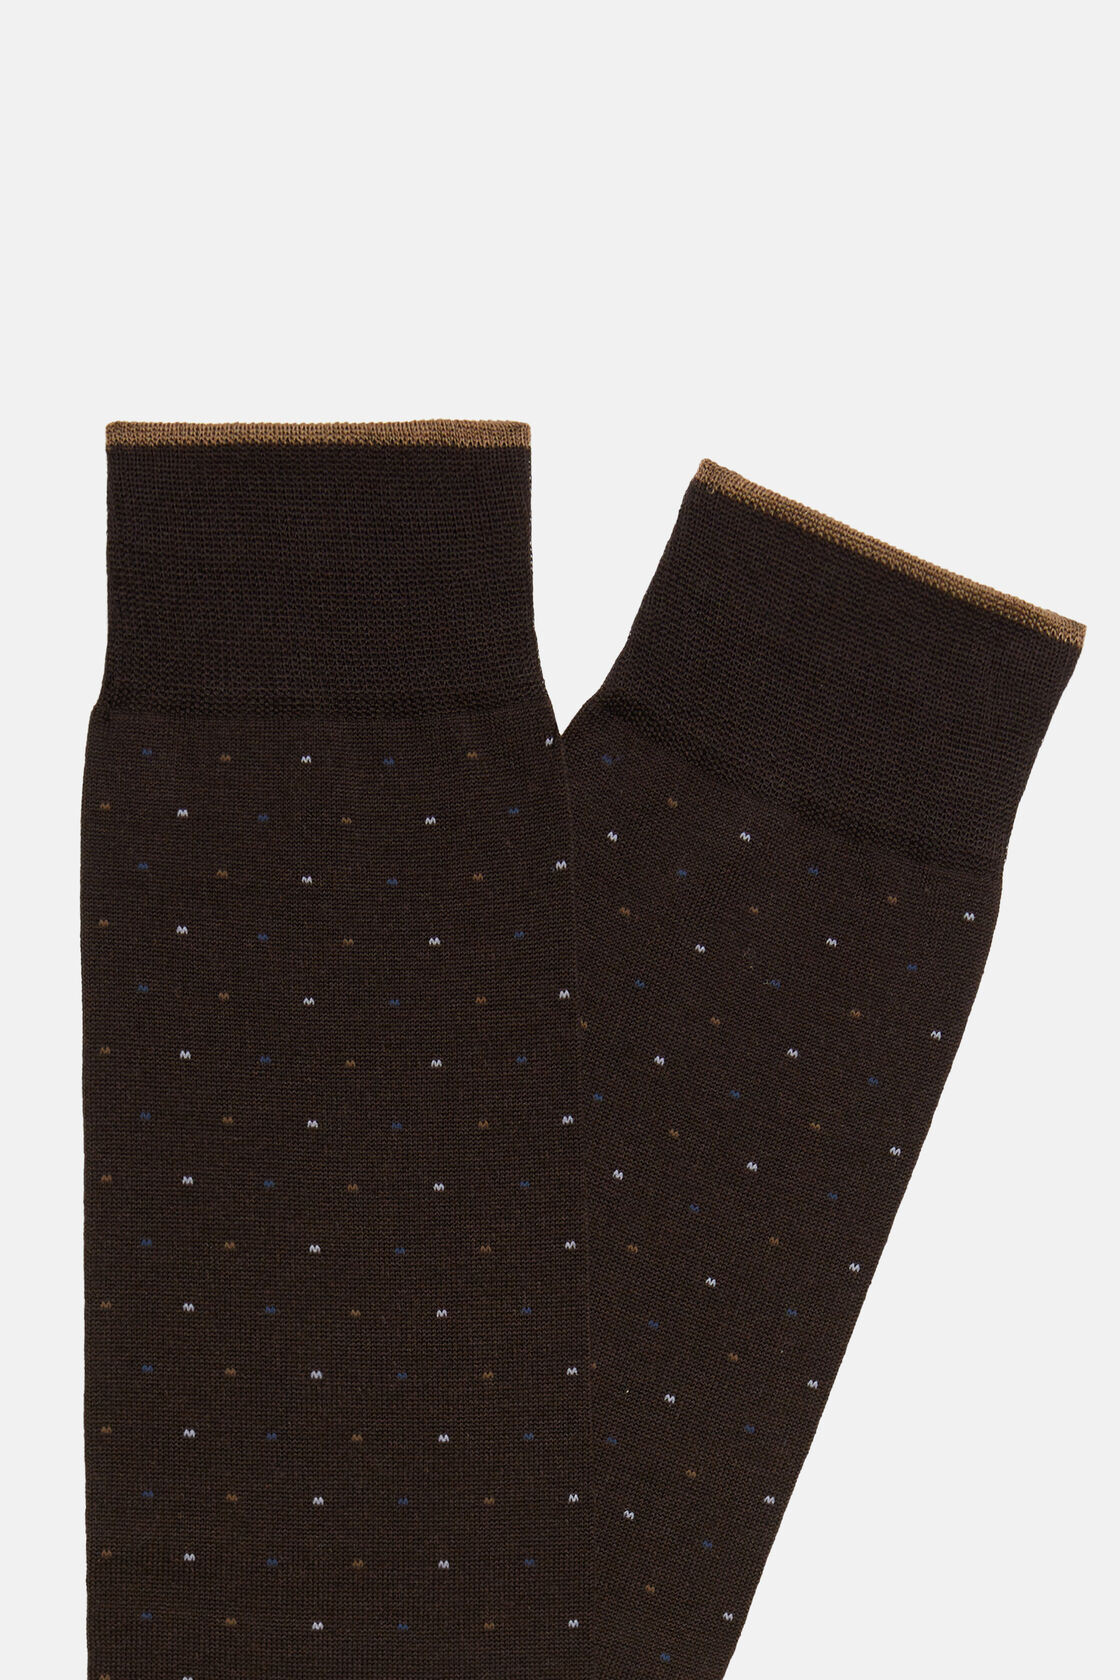 Socken mit Mikropunktemuster aus Baumwolle, Braun, hi-res